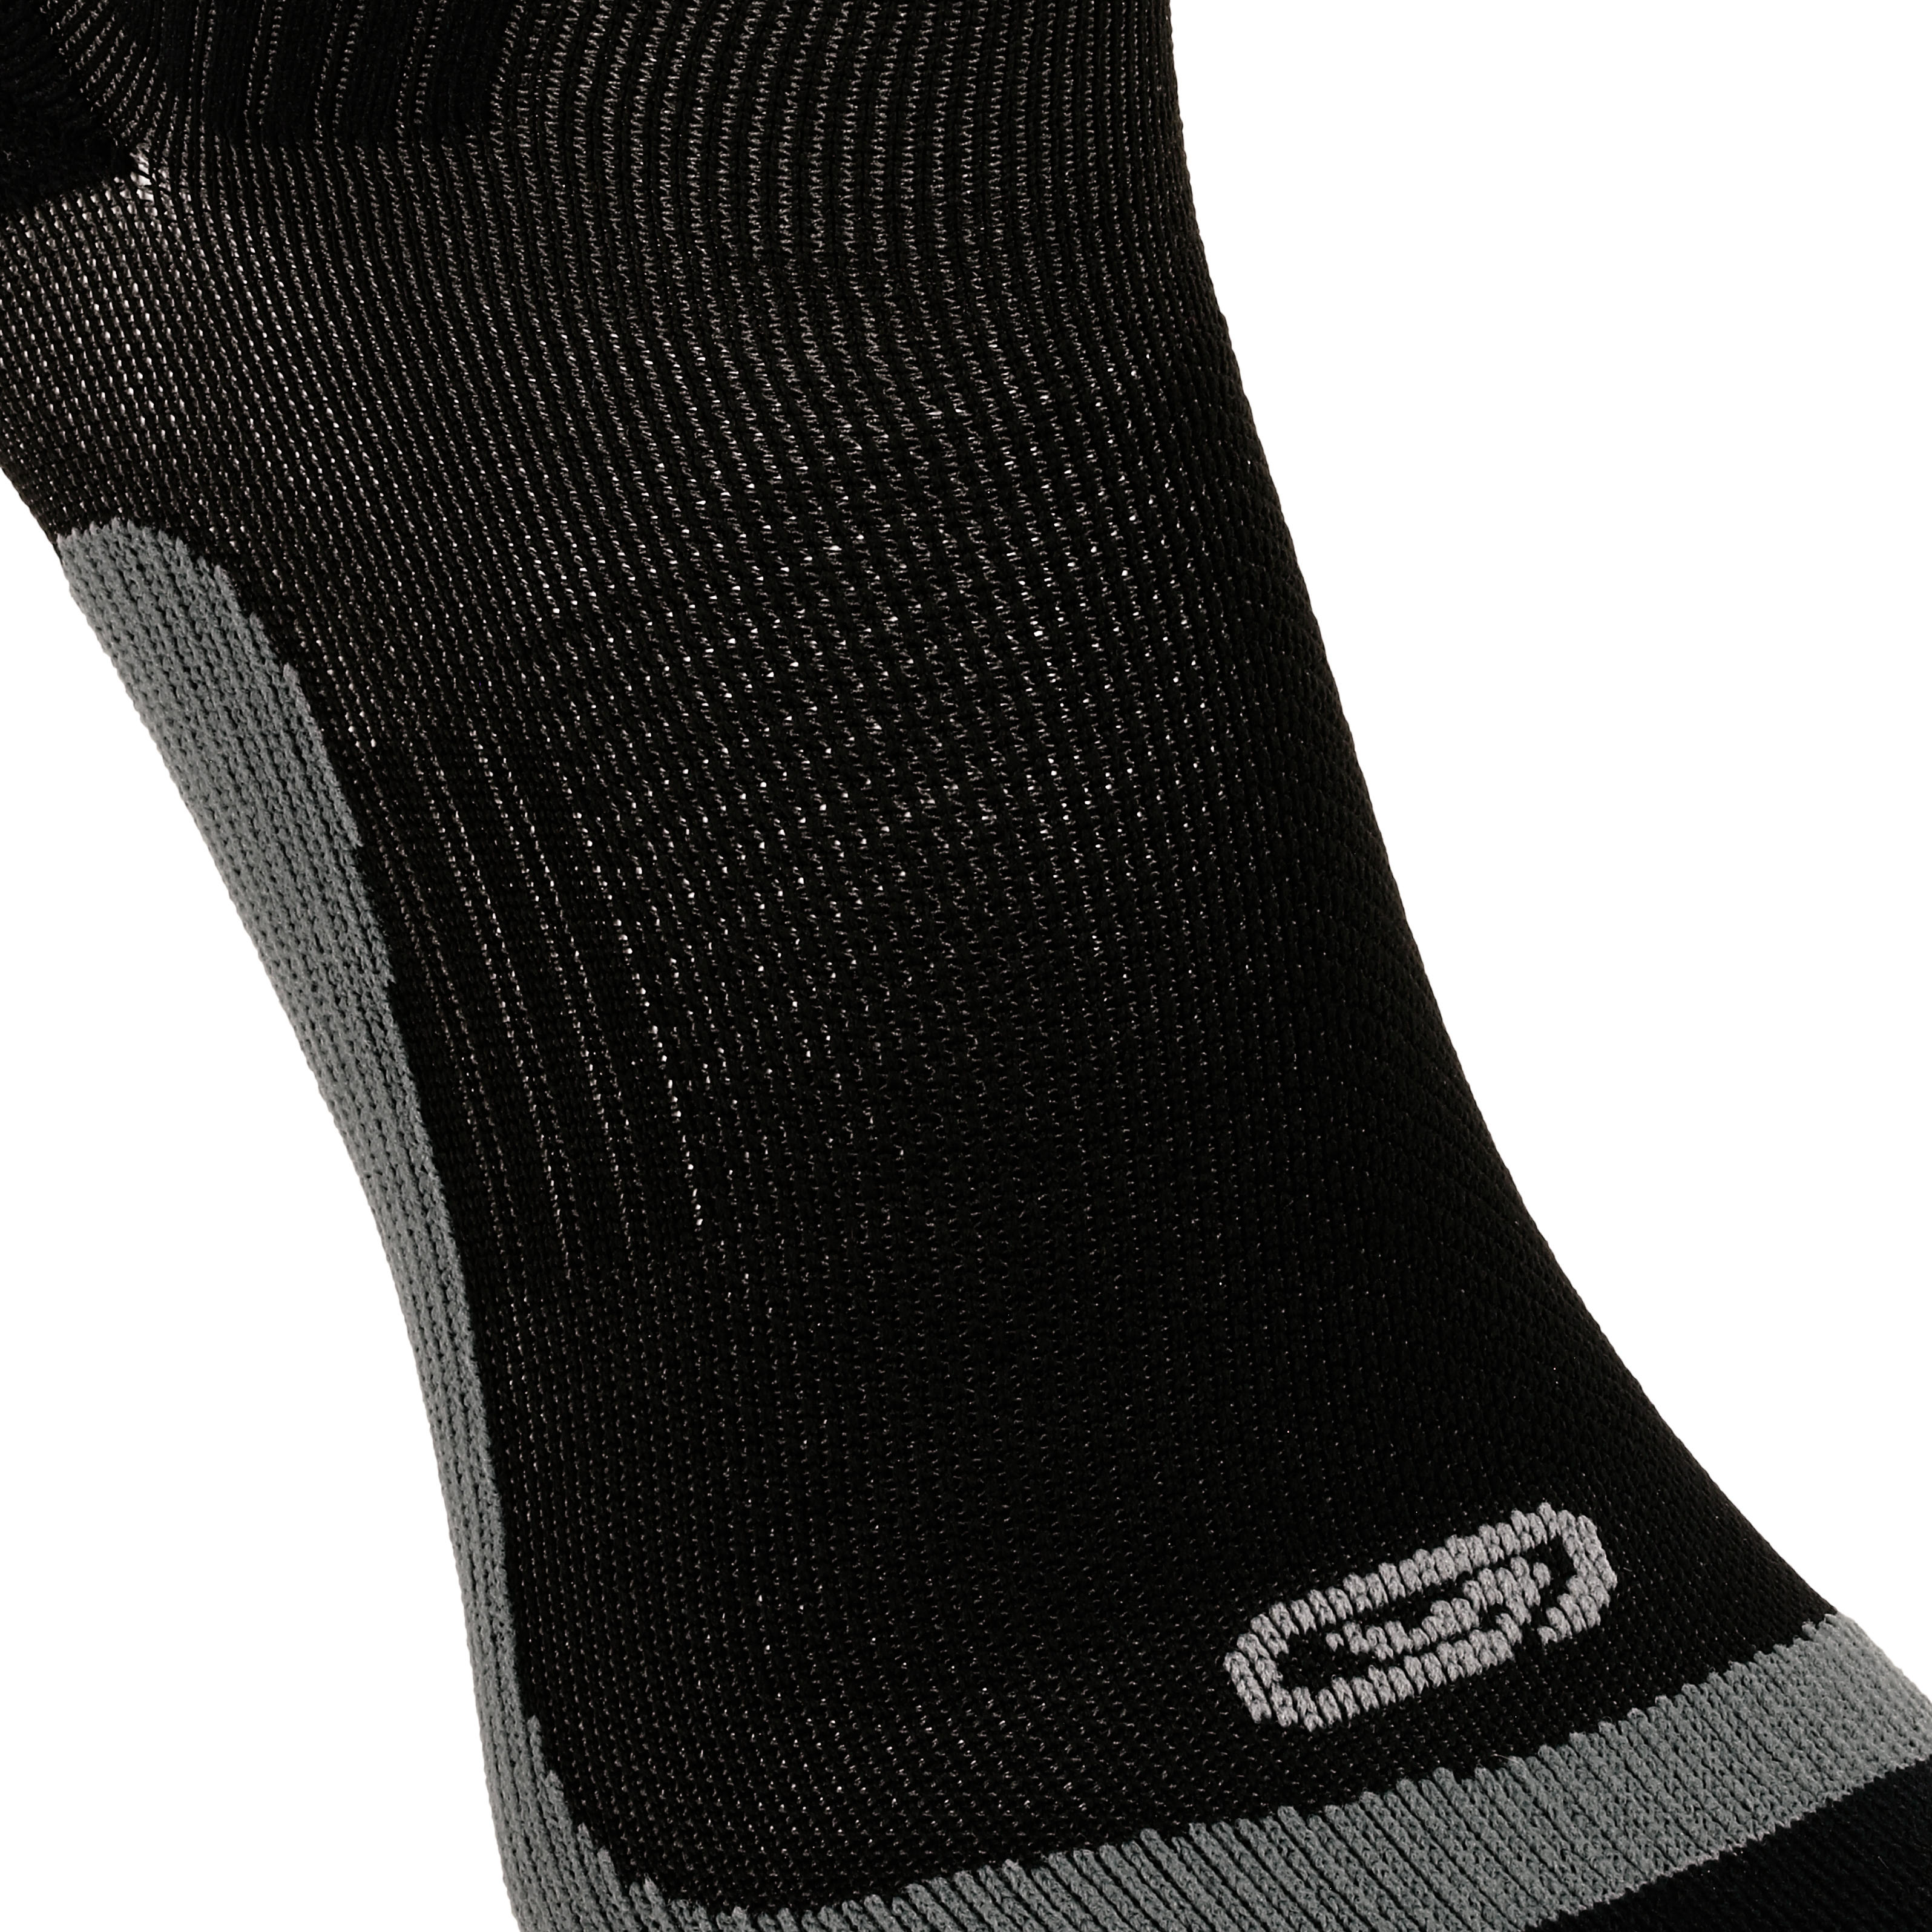 kiprun compression socks